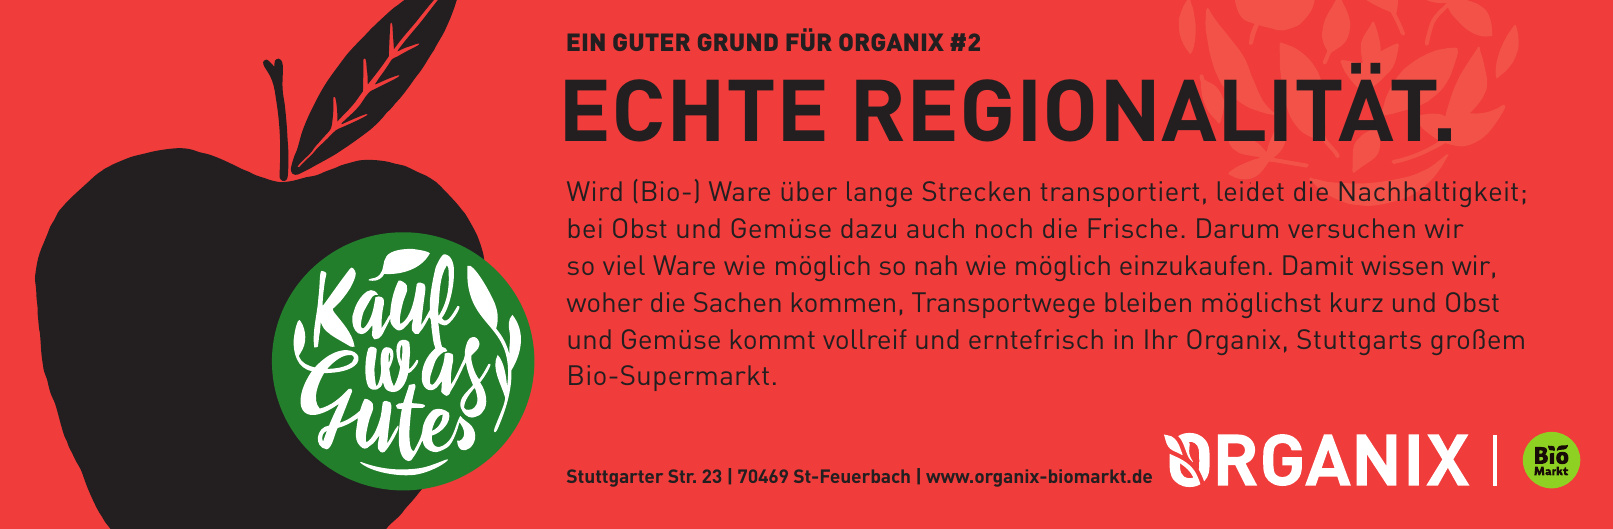 Organix Biomarkt GmbH